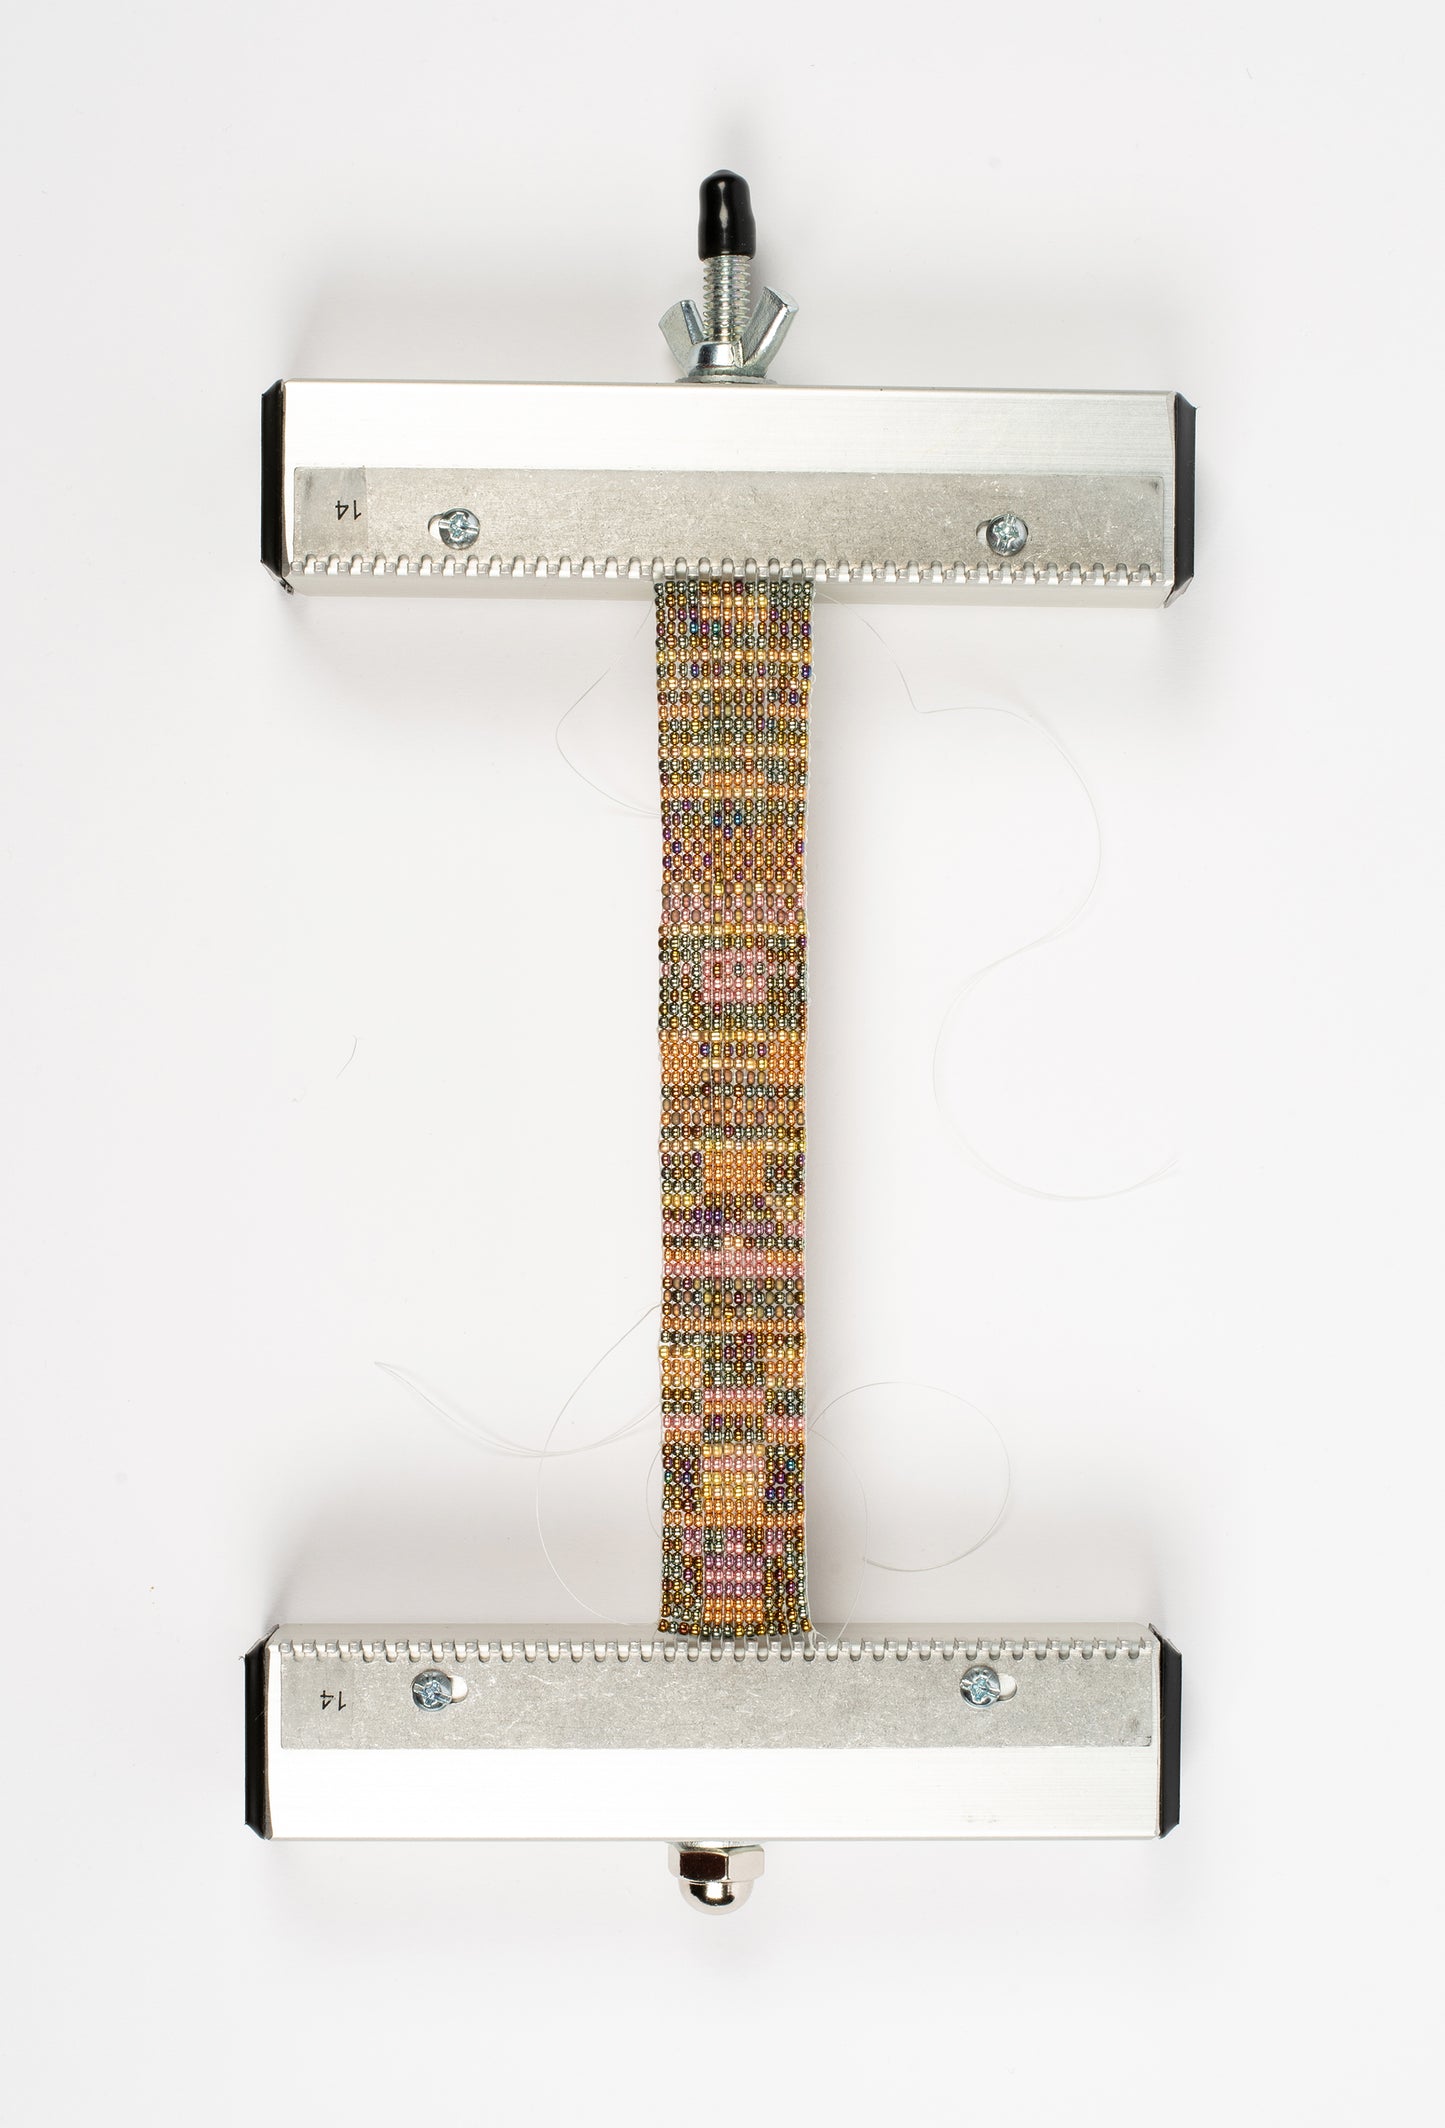 2022 Tapestry/Bead Cuff Bracelet Kit – Mirrix Looms